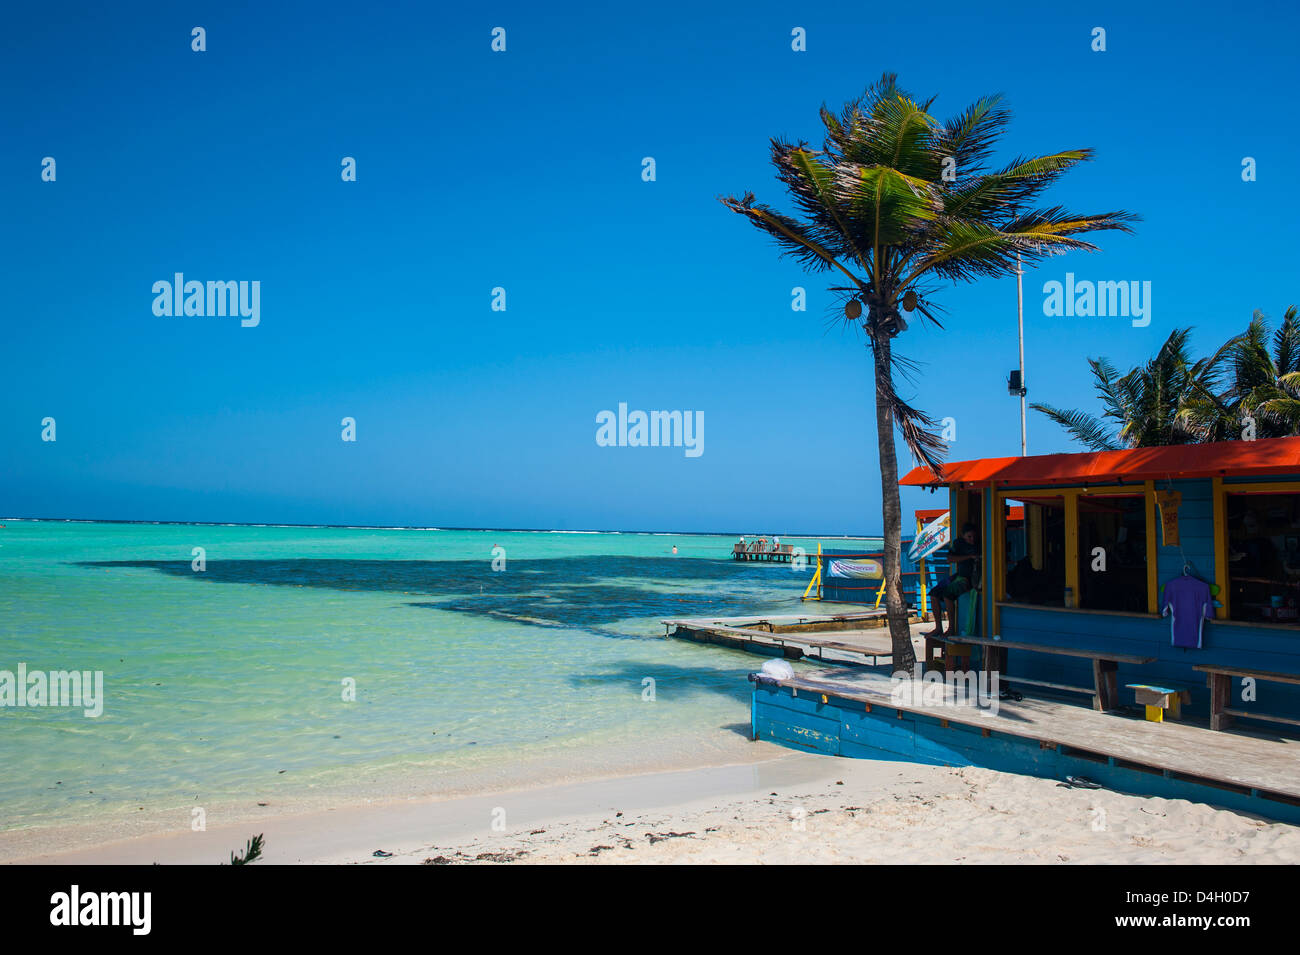 L'eau turquoise de la baie de Bac, Bonaire, Îles ABC, Netherlands Antilles, Caraïbes Banque D'Images